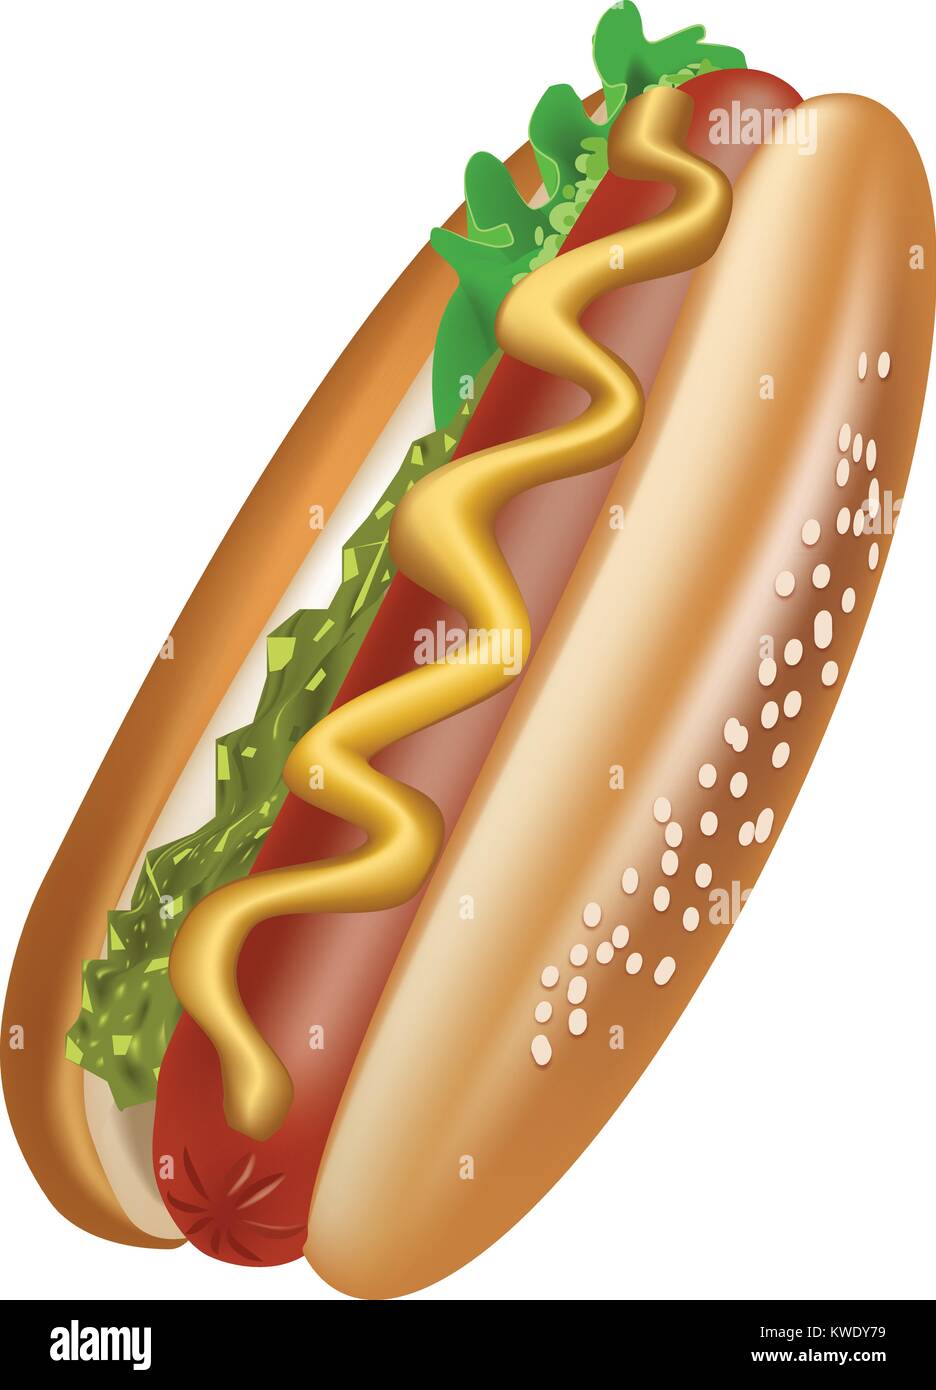 Hot dog Vector Illustration mit weißem Hintergrund - sesambrötchen und Würstchen mit Salat, Senf und speziellen Sauce Stock Vektor